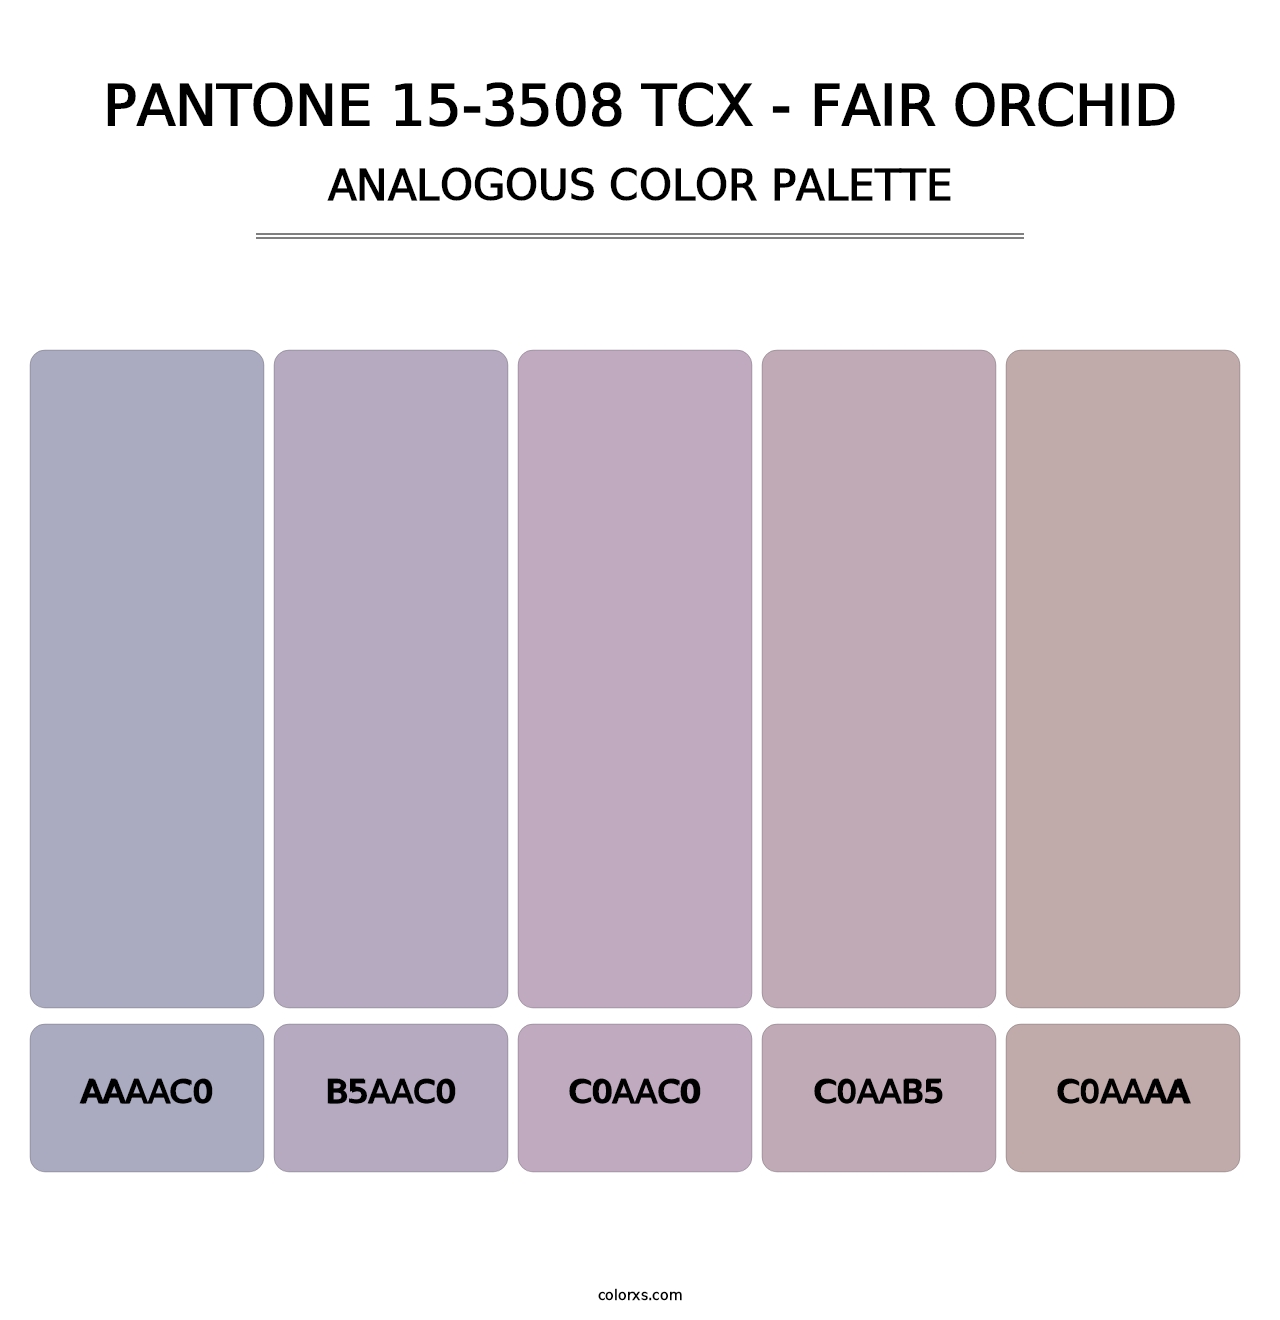 PANTONE 15-3508 TCX - Fair Orchid - Analogous Color Palette